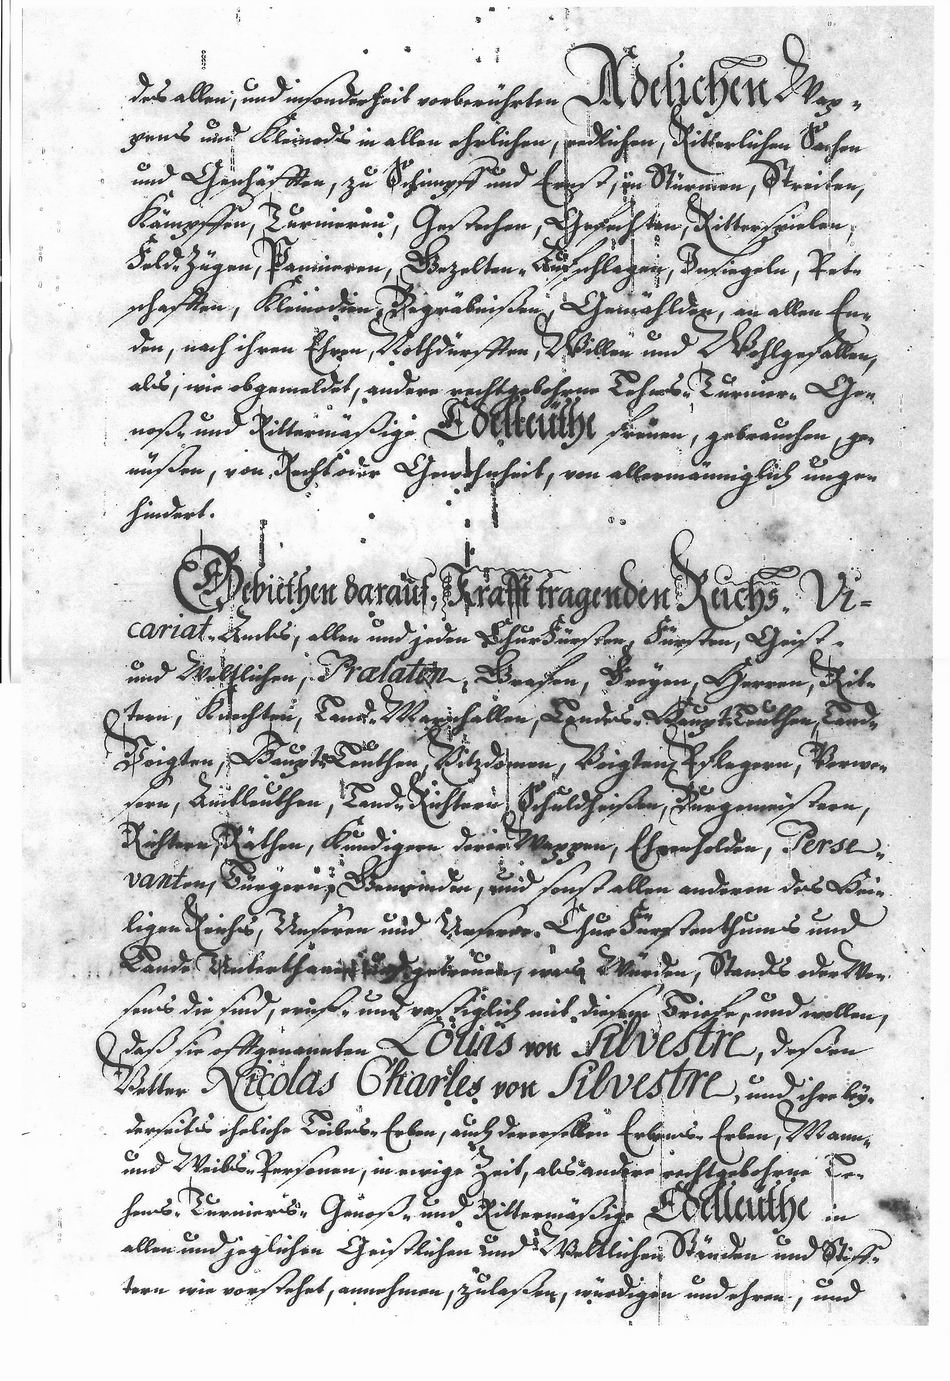 Lettres de noblesse pour Louis de Silvestre et Nicolas-Charles de Silvestre - Page 5/6